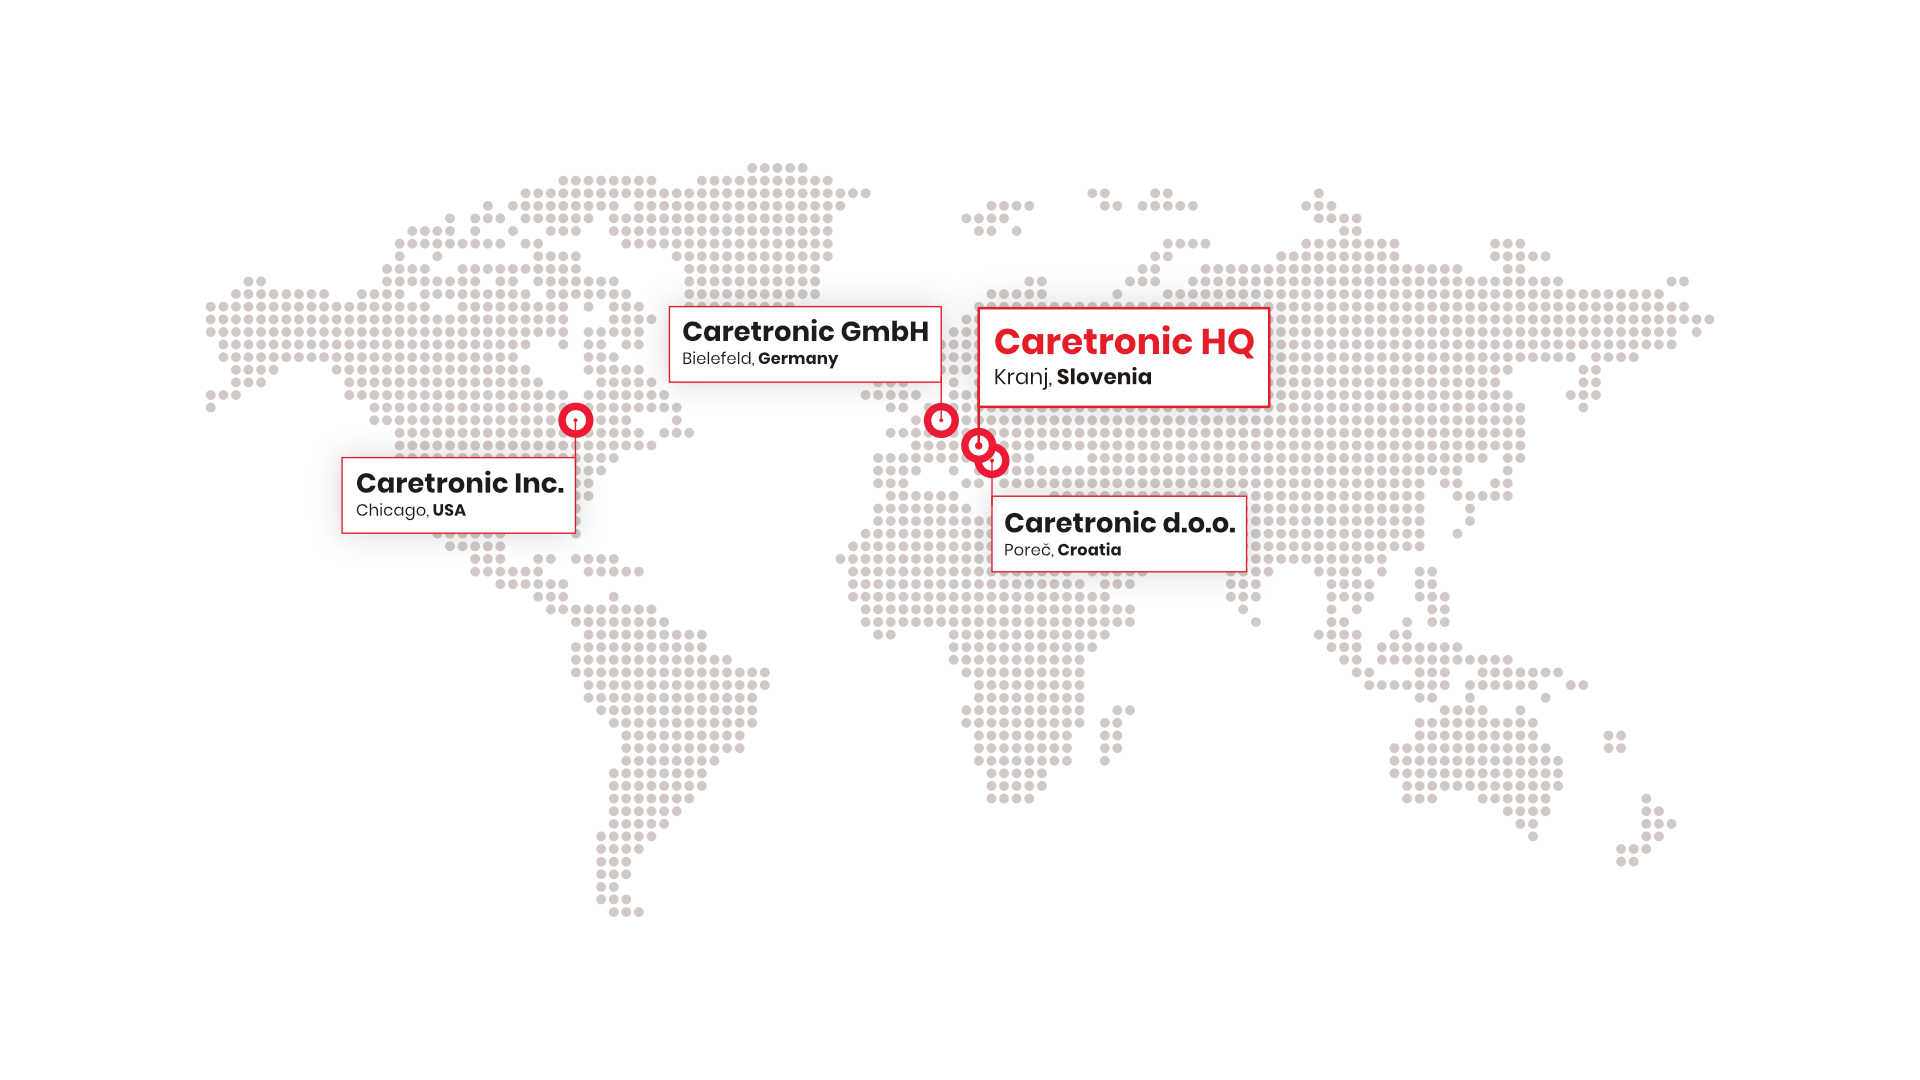 Zemljevid sveta, ki prikazuje Caretronicove pisarne v Sloveniji, na Hrvaskem, v Nemciji in ZDA